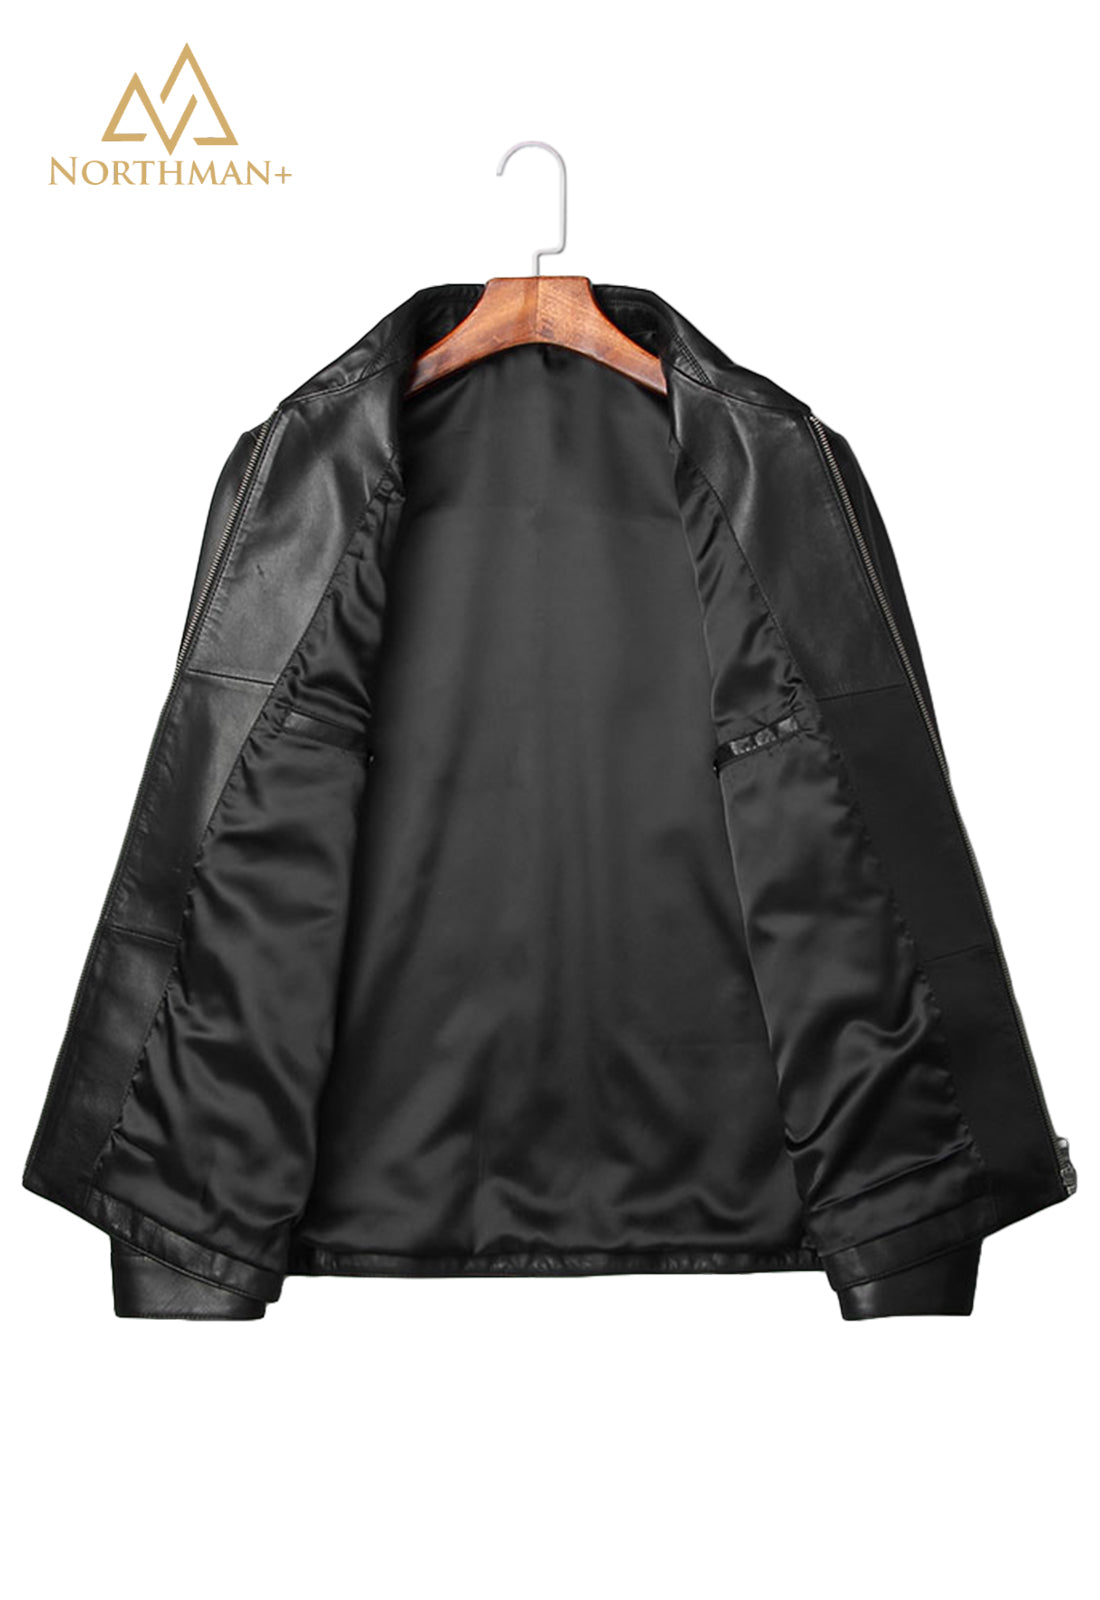 Men's Slim Fit Leather Jacket : The Urban Captain – Northman Plus